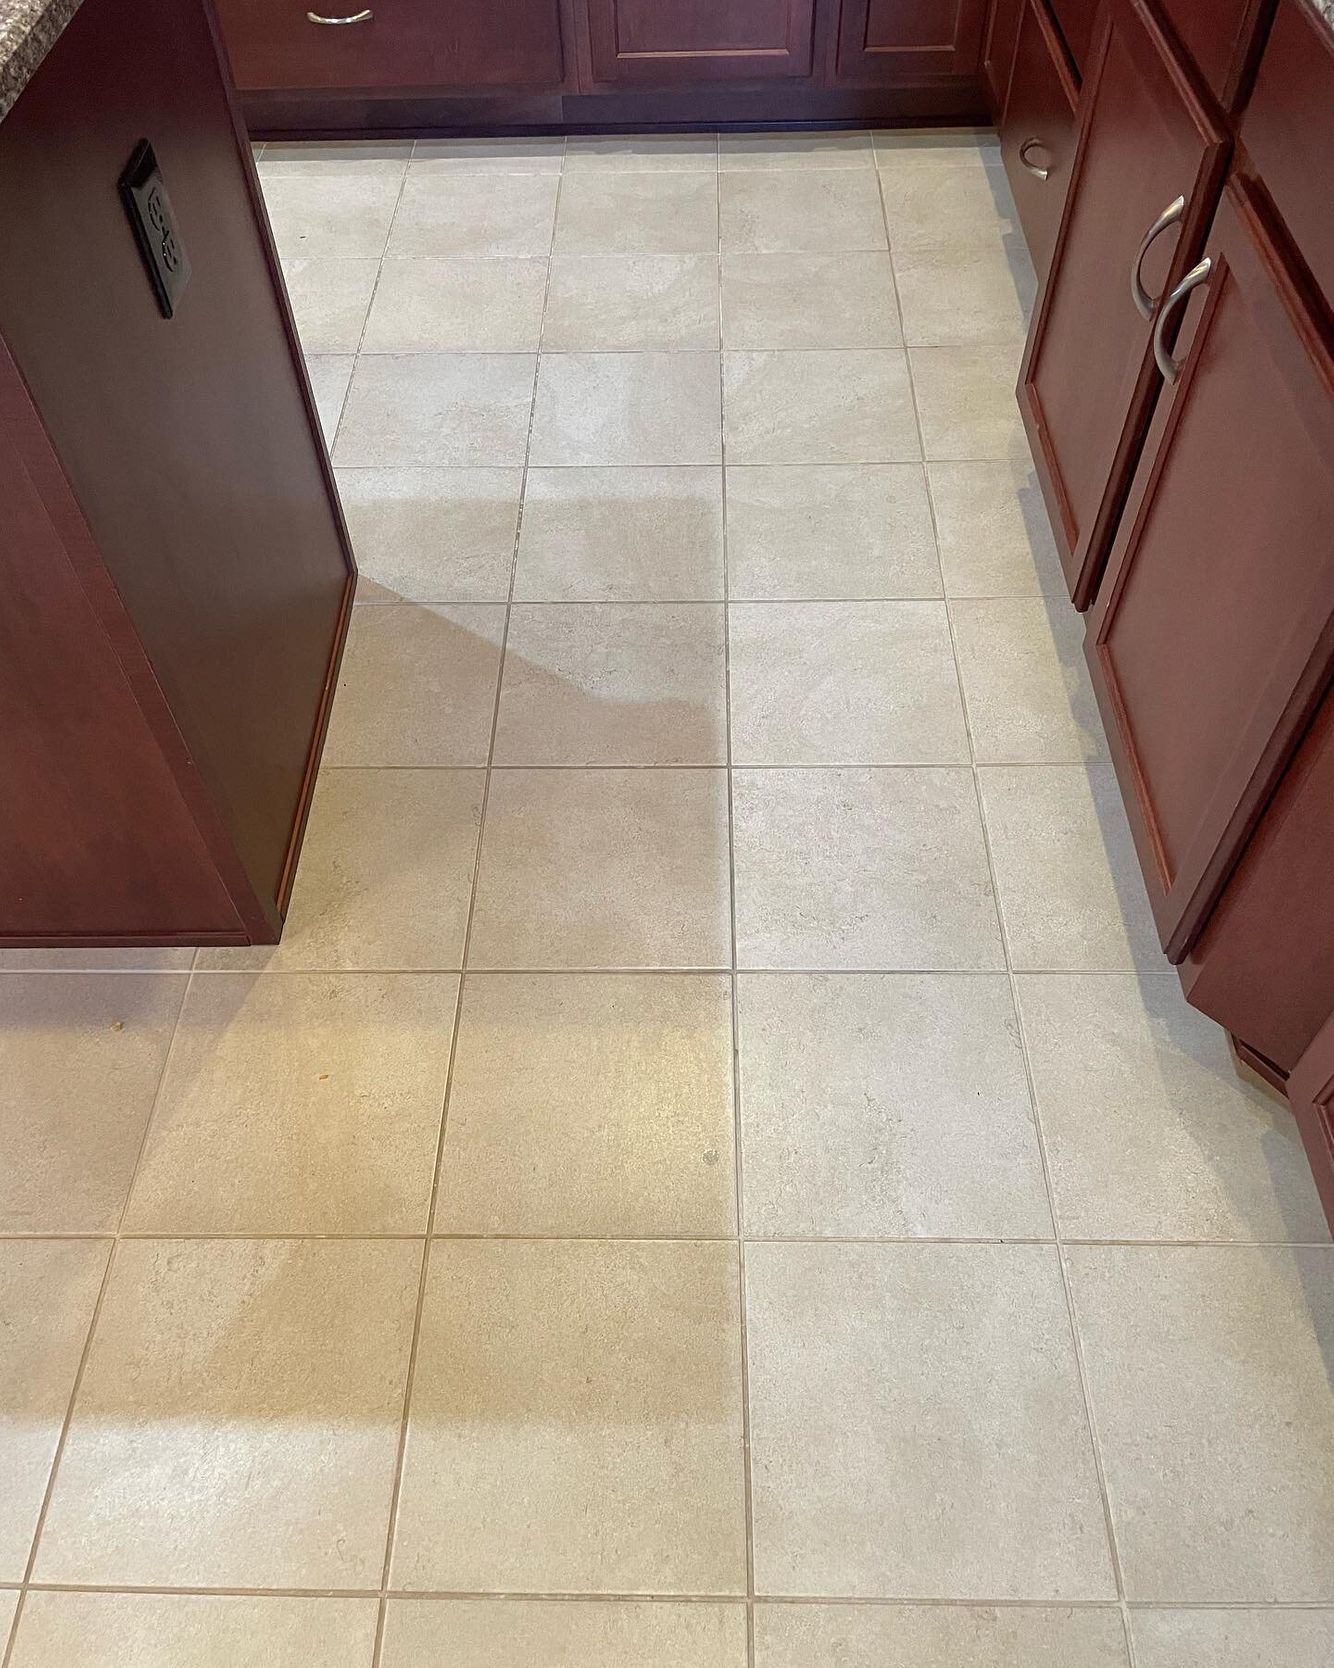 Clean cream colored tile floor